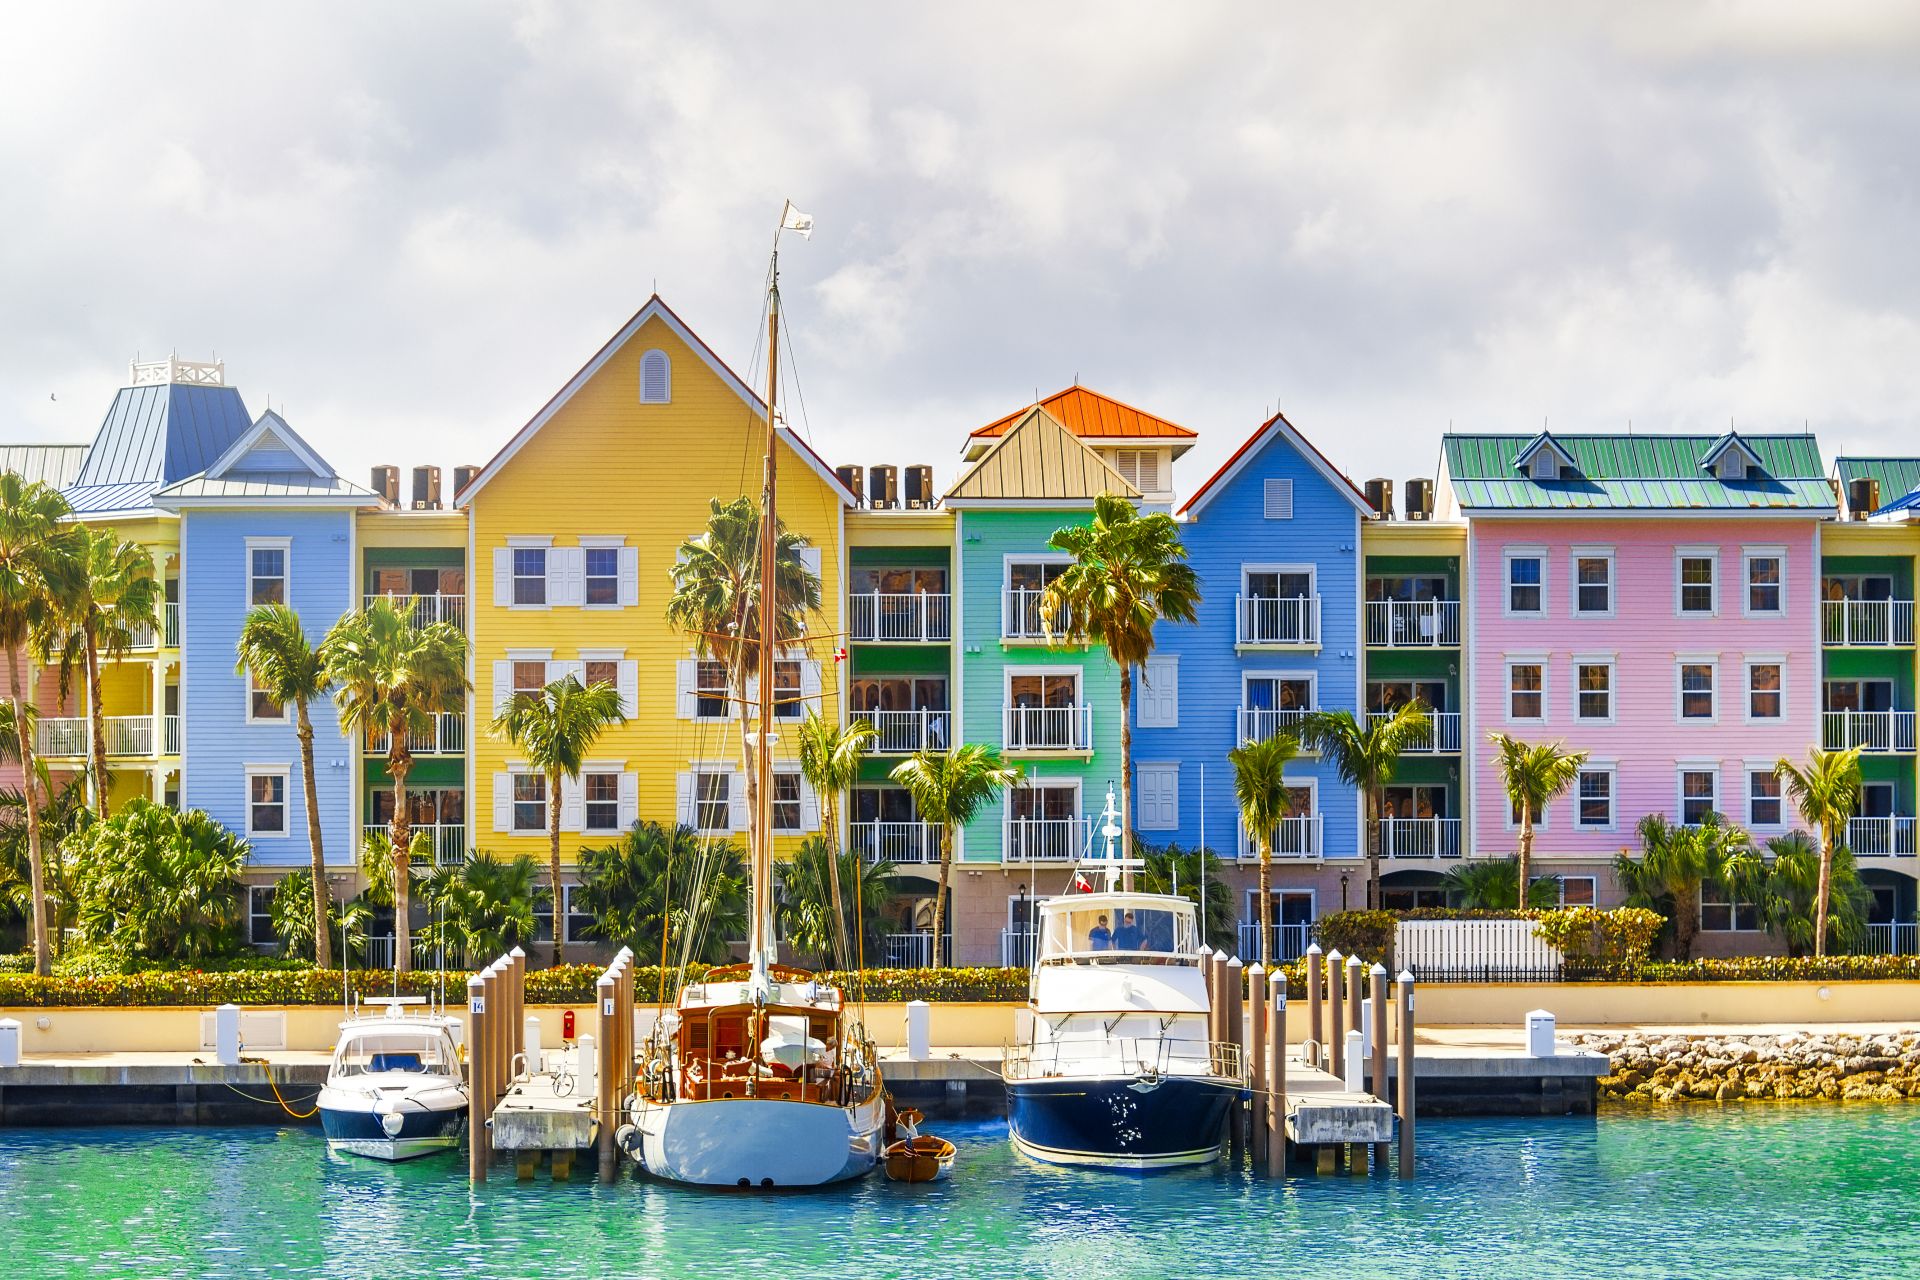 Casas de colores en la costa de Nassau, Bahamas.